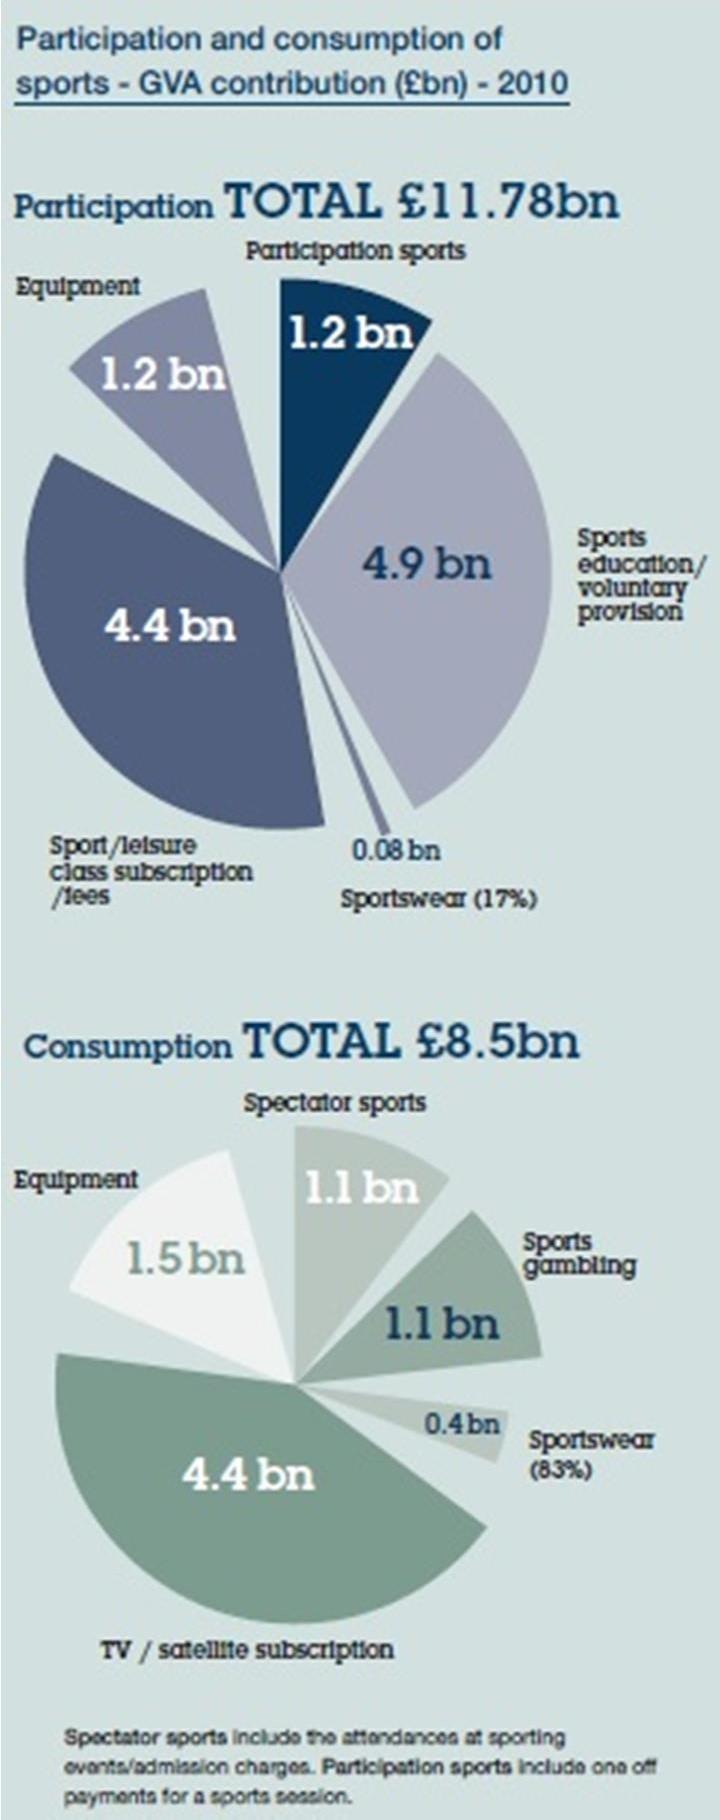 (nevezési díj) 0,08 milliárd: sportruházat 8,5 milliárd pedig a kereskedelmi tevékenységekből származott.